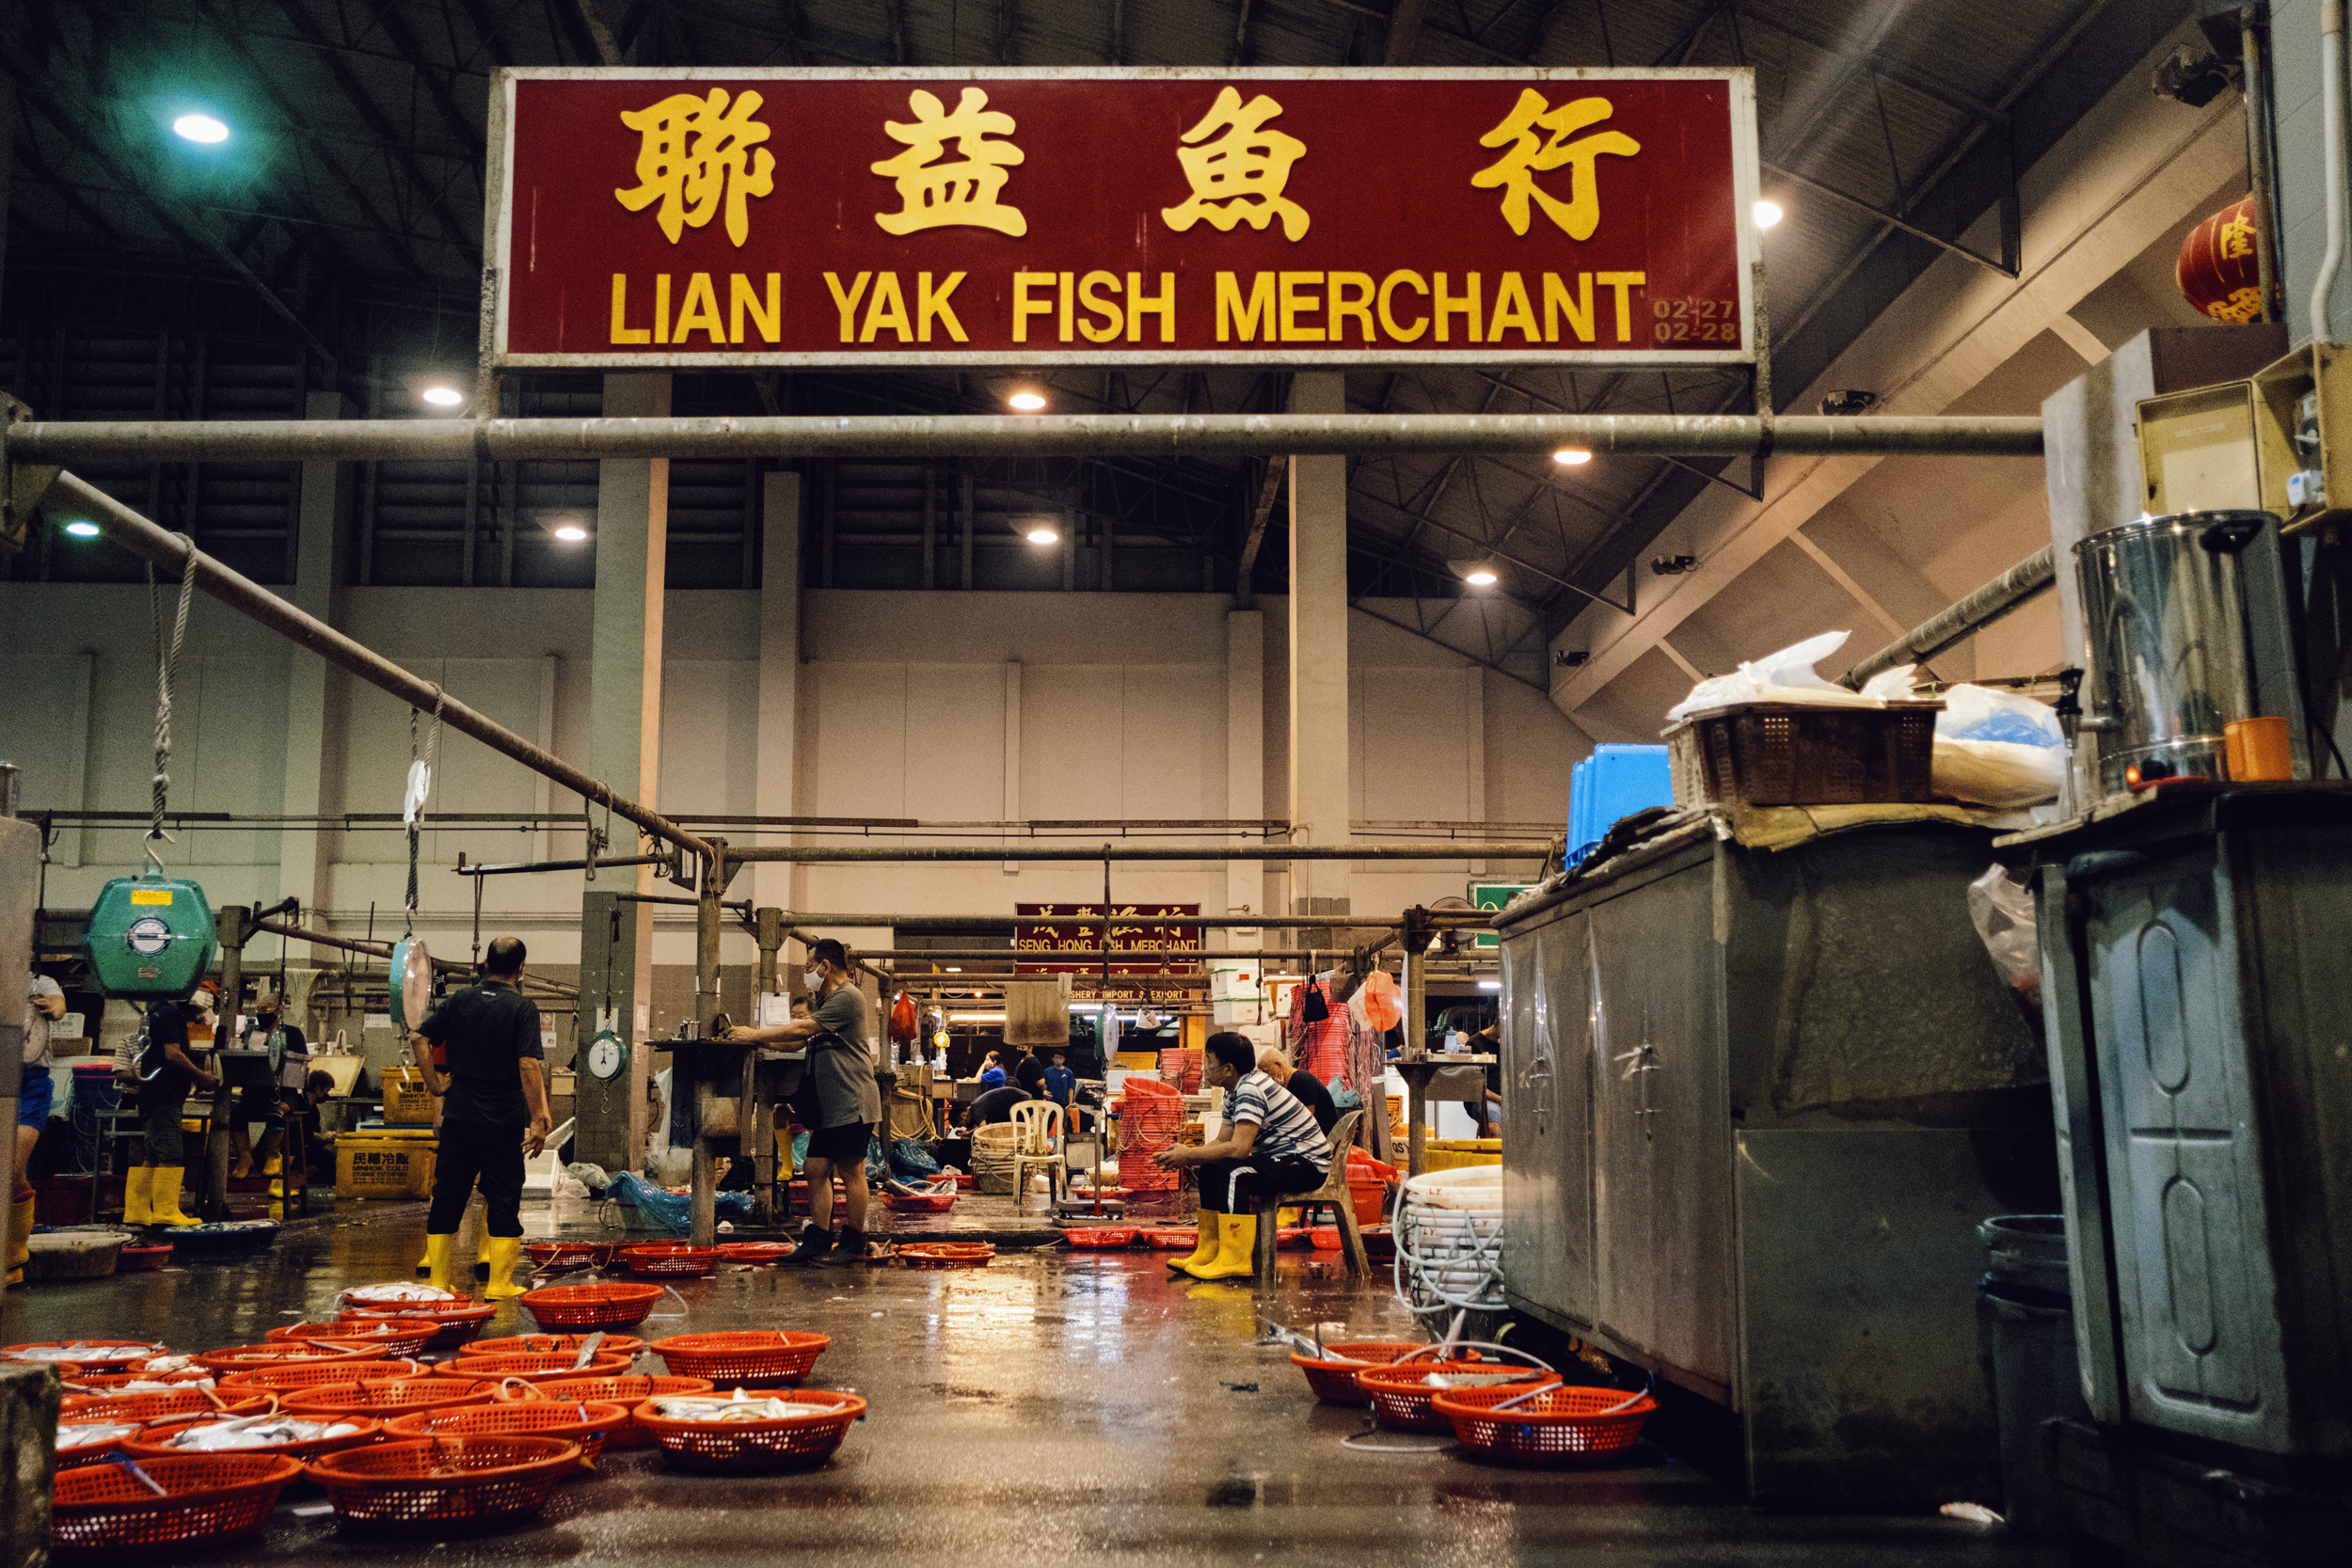 Lian Yak Fish Merchant's stall at Senoko